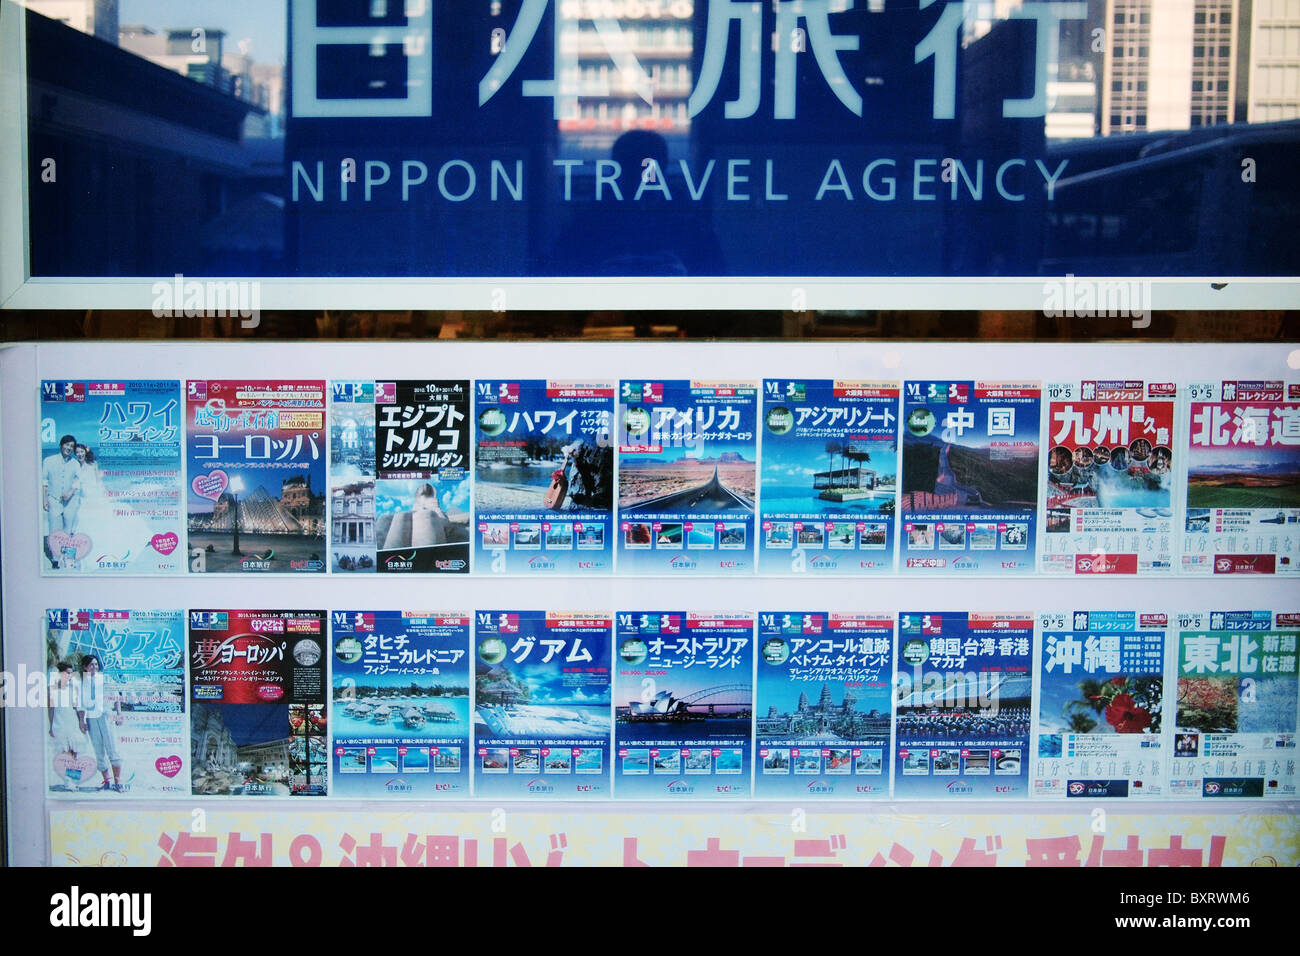 Nippon Travel Agency tourisme maison de poster au Japon Banque D'Images